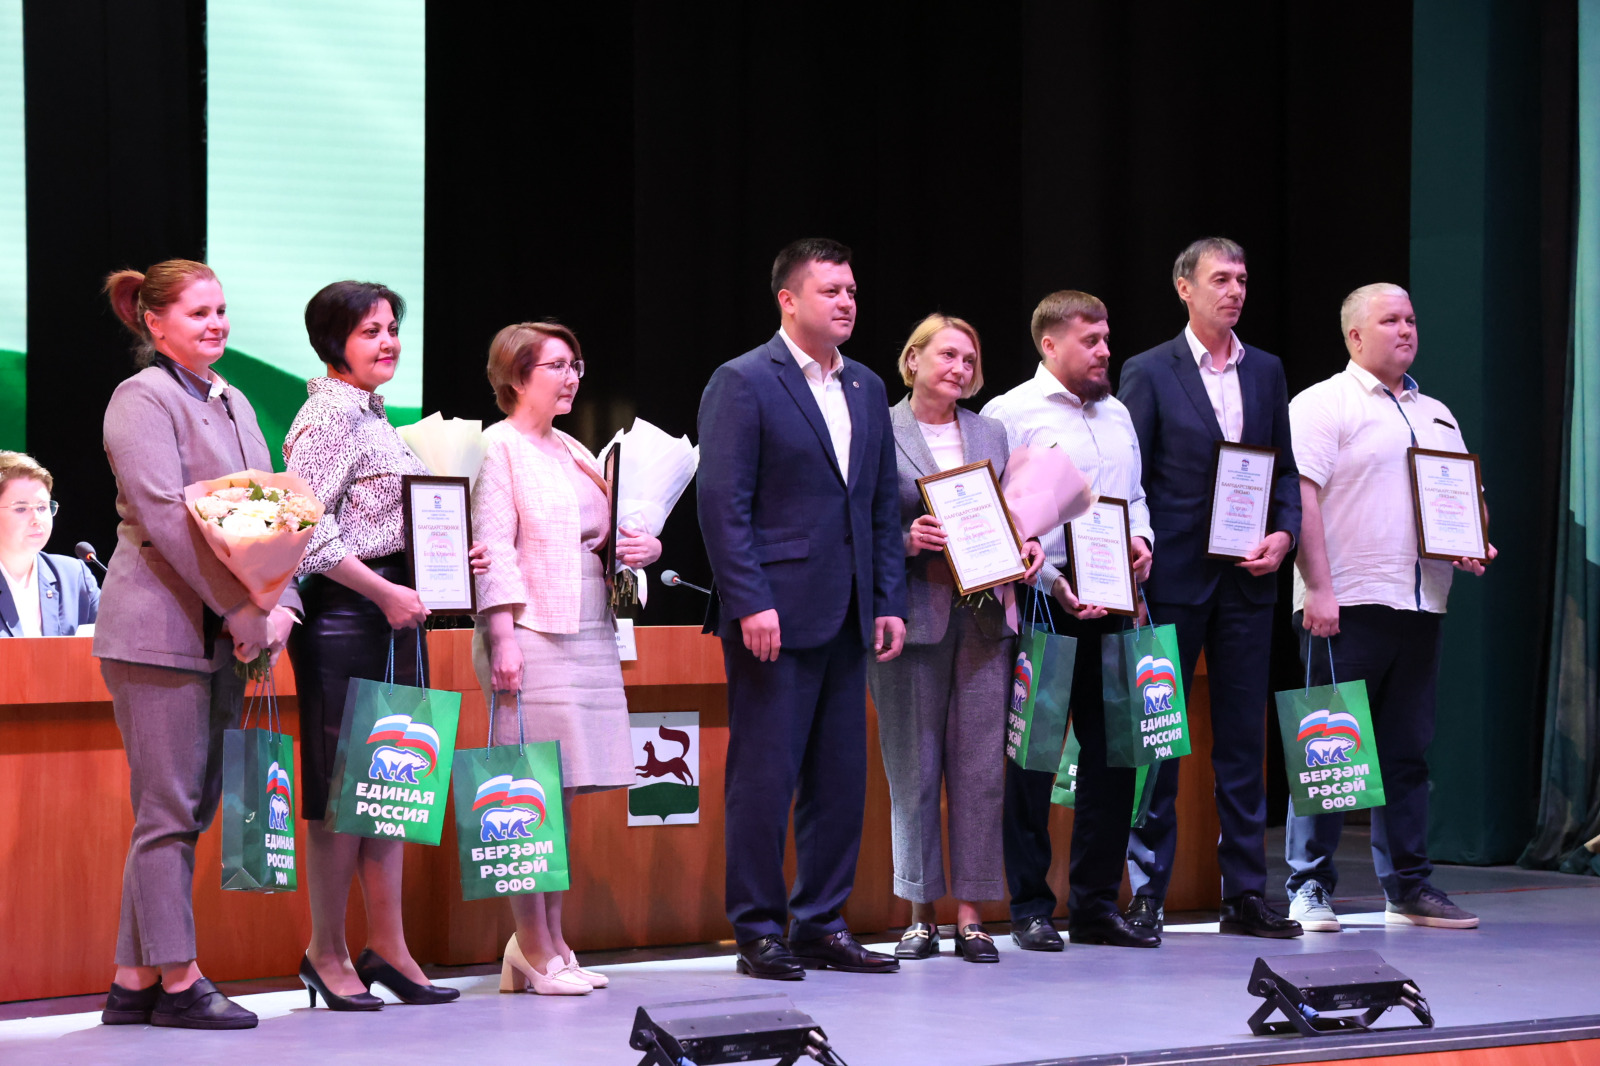 Мэр Уфы Ратмир Мавлиев наградить отличившихся членов местного отделения партии «Единая Россия»